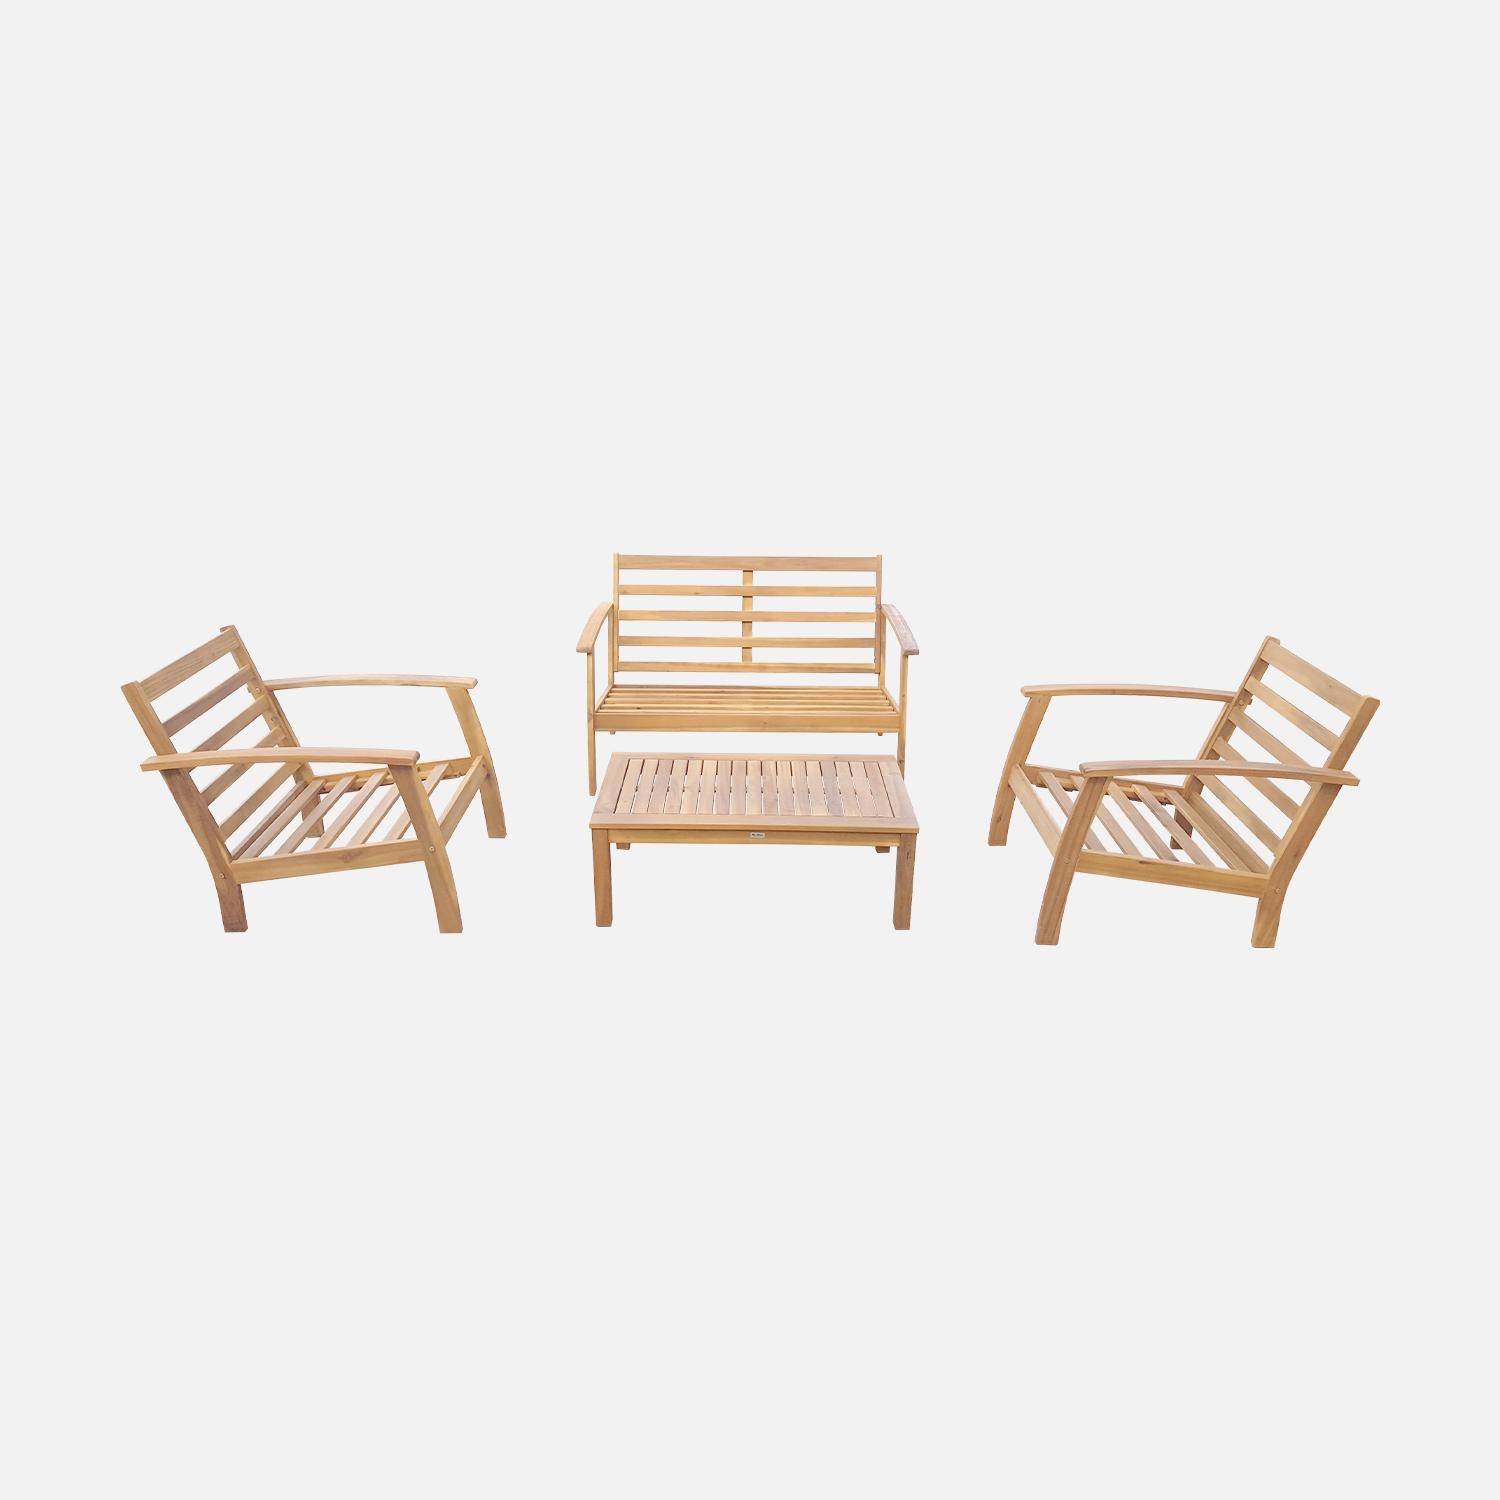 Salon de jardin en bois 4 places - Ushuaïa - Coussins écrus, canapé, fauteuils et table basse en acacia, design Photo6